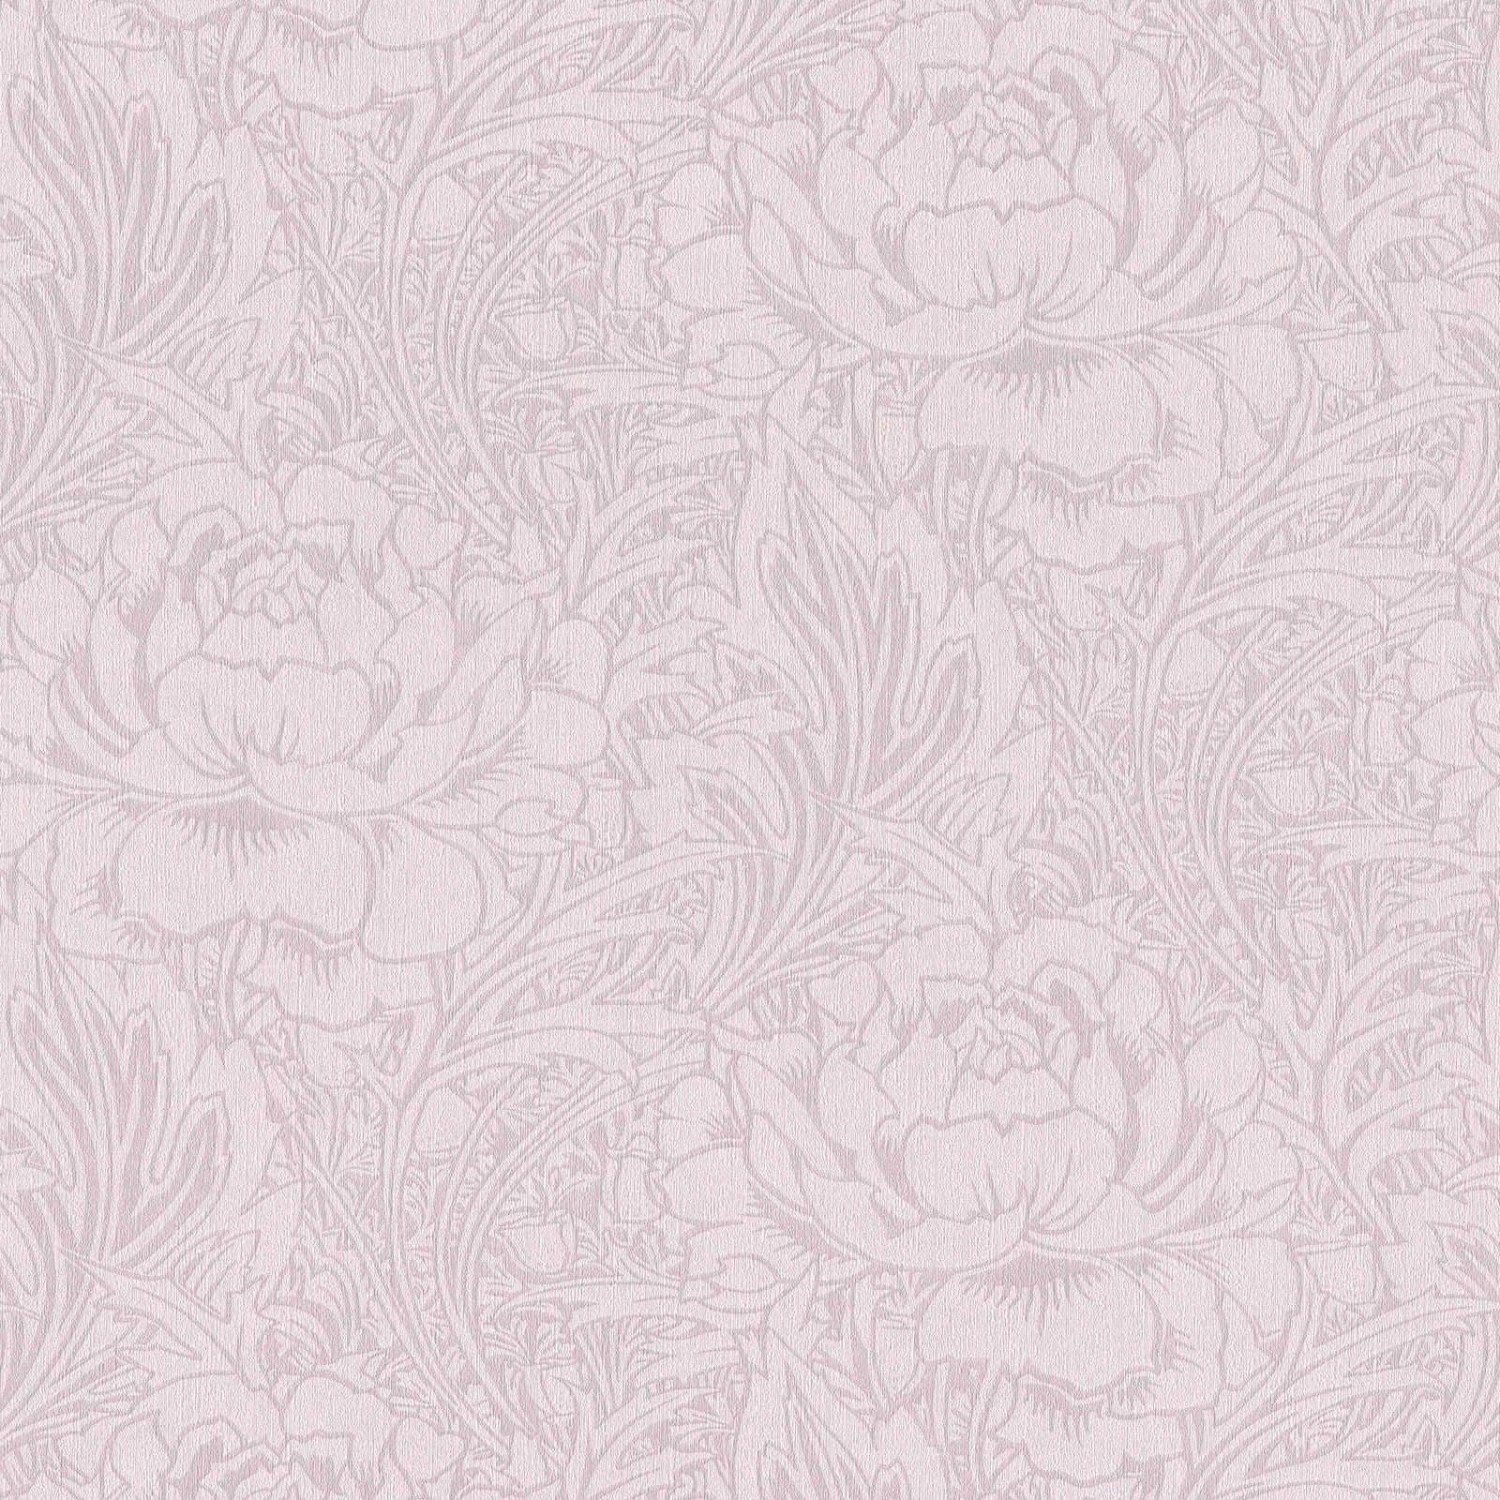 Bricoflor Taupe Tapete mit Rosen Blumen Vliestapete in Grau Beige Ideal für Esszimmer und Schlafzimmer Vlies Rosentapete im Vintage Landhausstil von Bricoflor